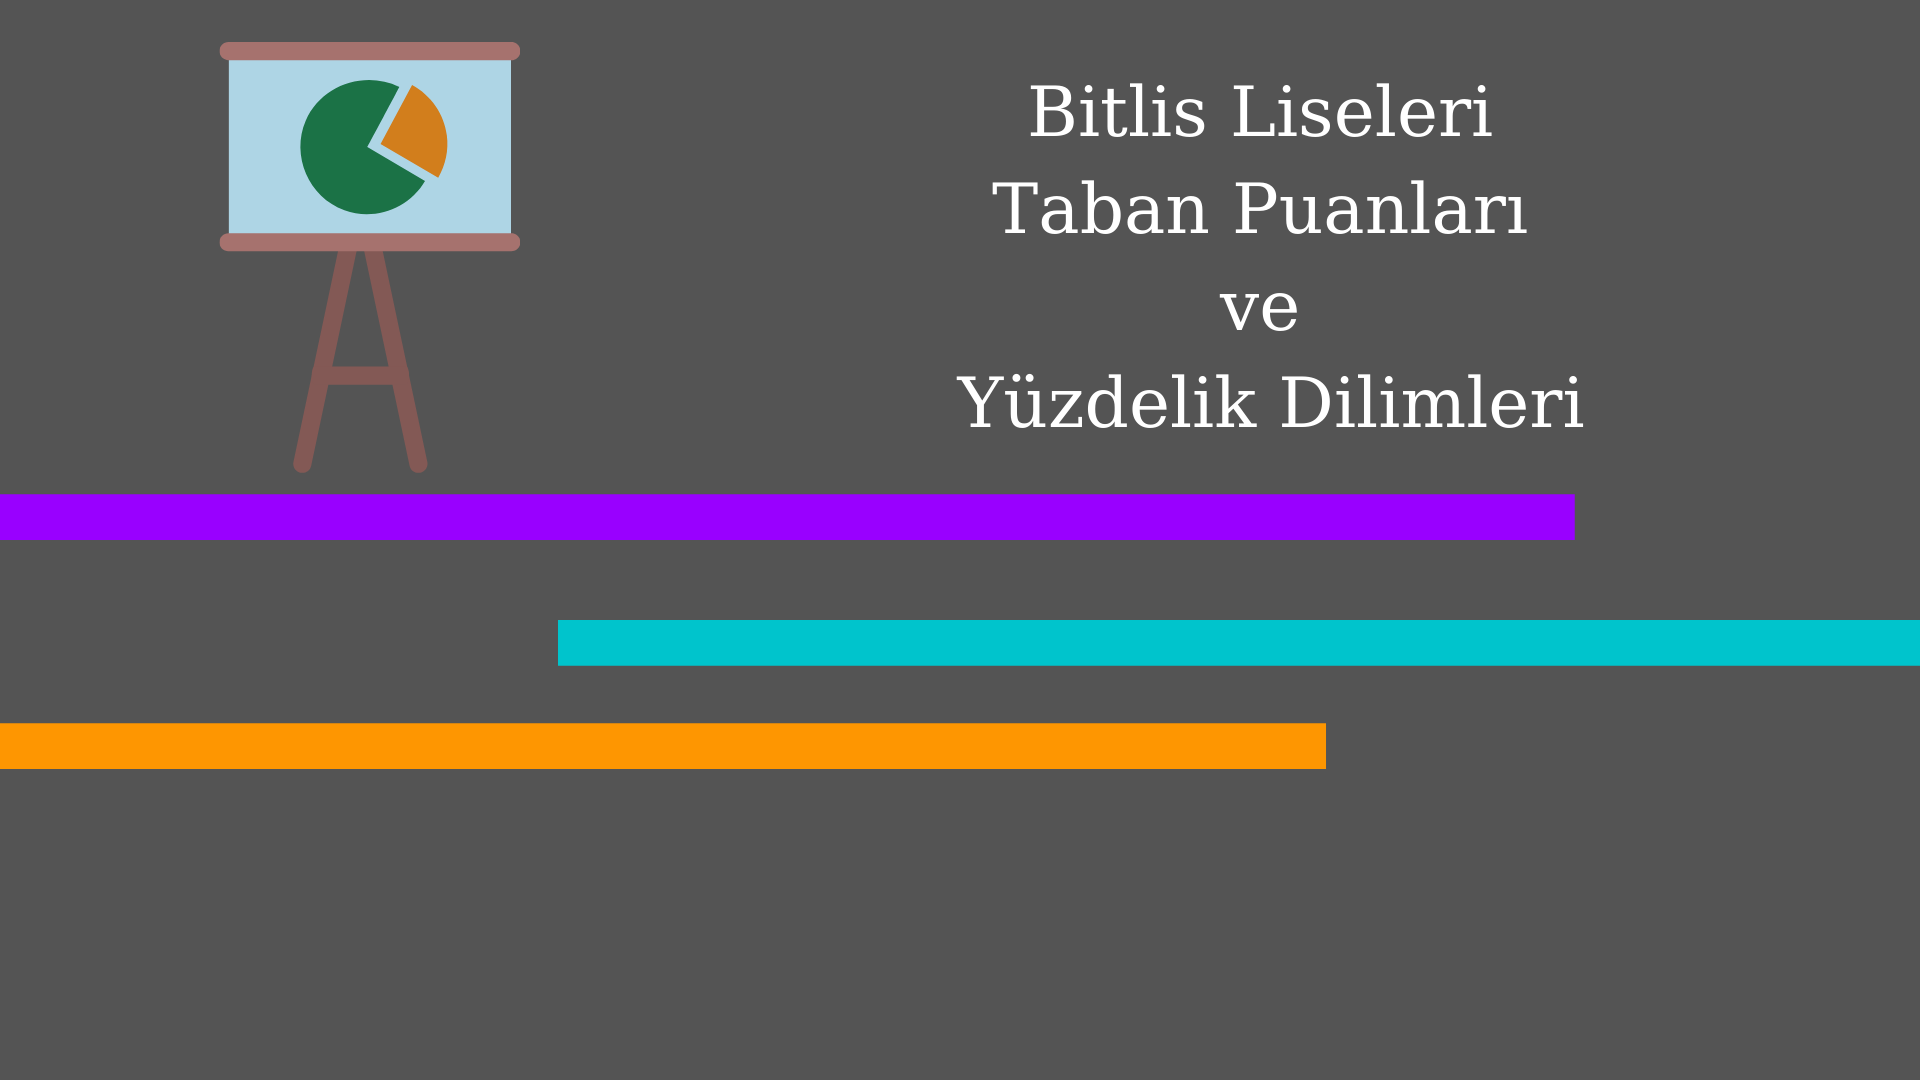 Bitlis Liseleri Taban Puanları ve Yüzdelik Dilimleri 2021